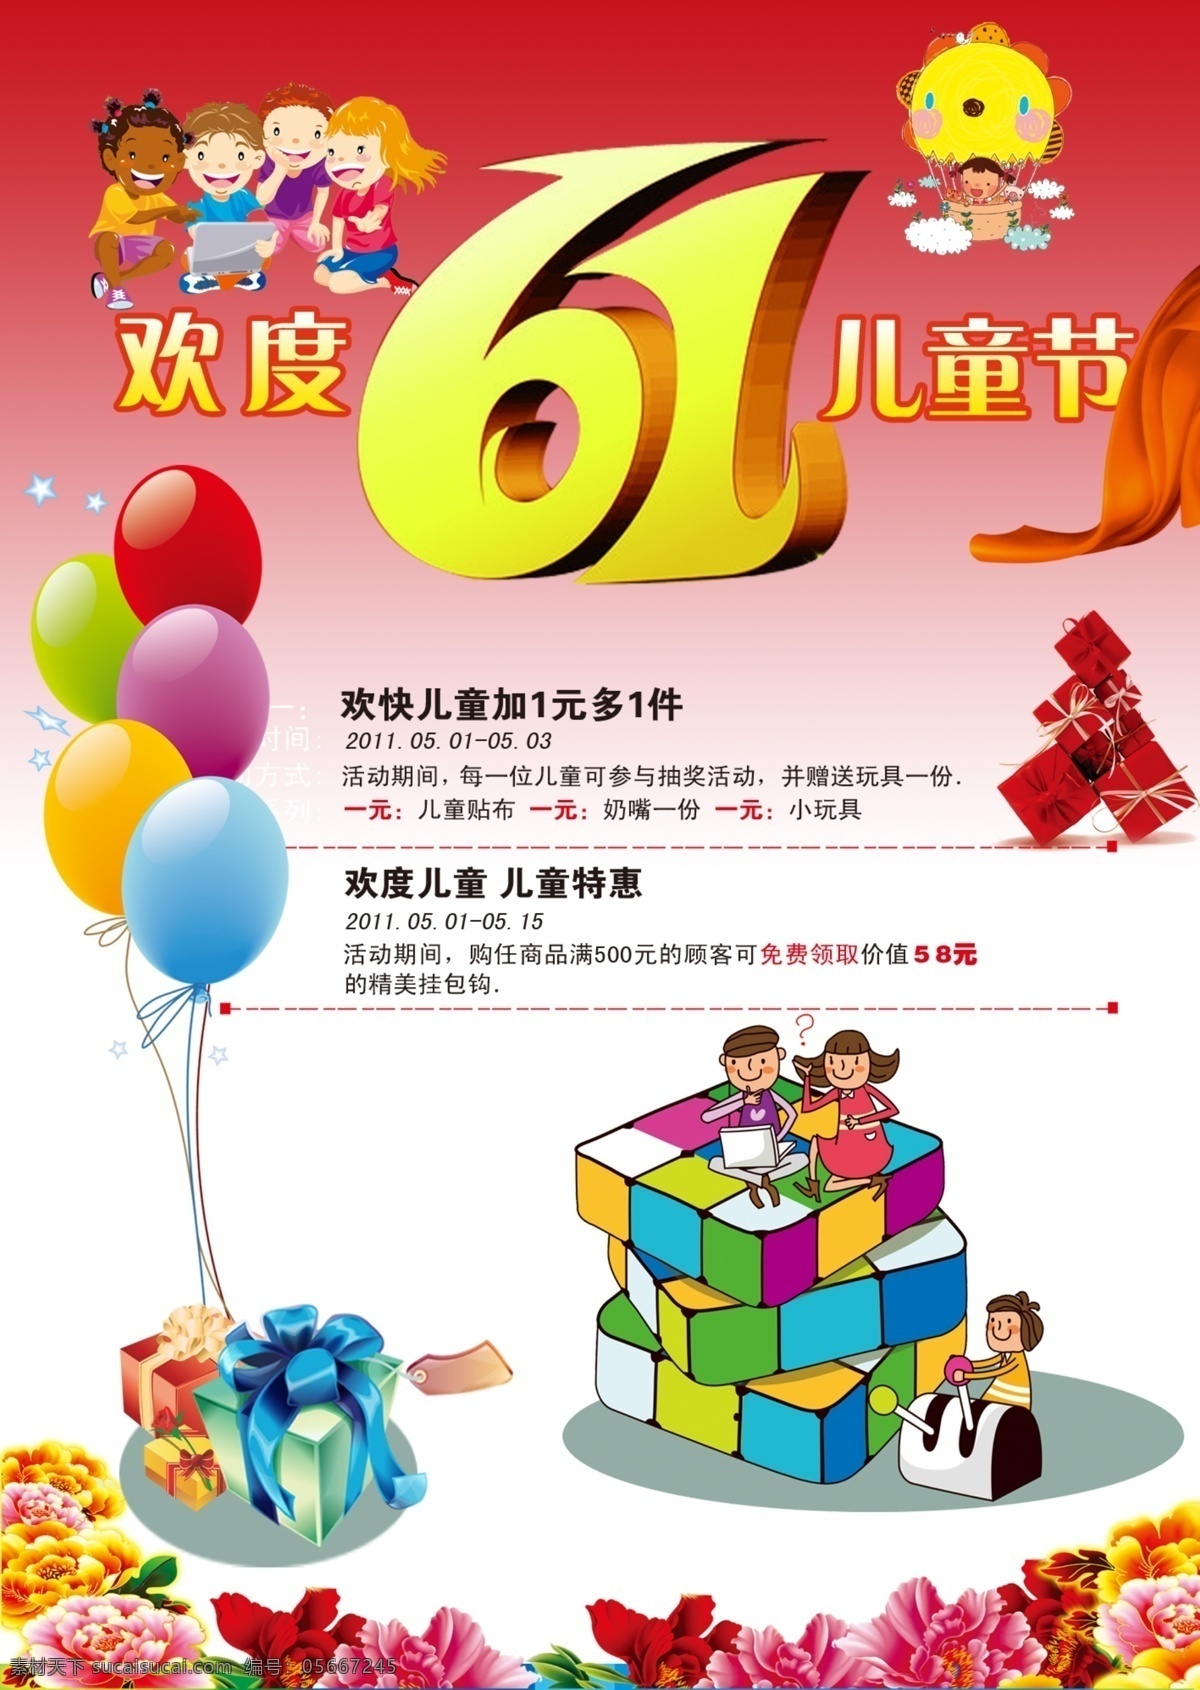 儿童节 61 购物 广告设计模板 孩子 欢度 礼品 气球 庆祝 欢度6 模板下载 1儿童节 源文件 展板 节日展板设计